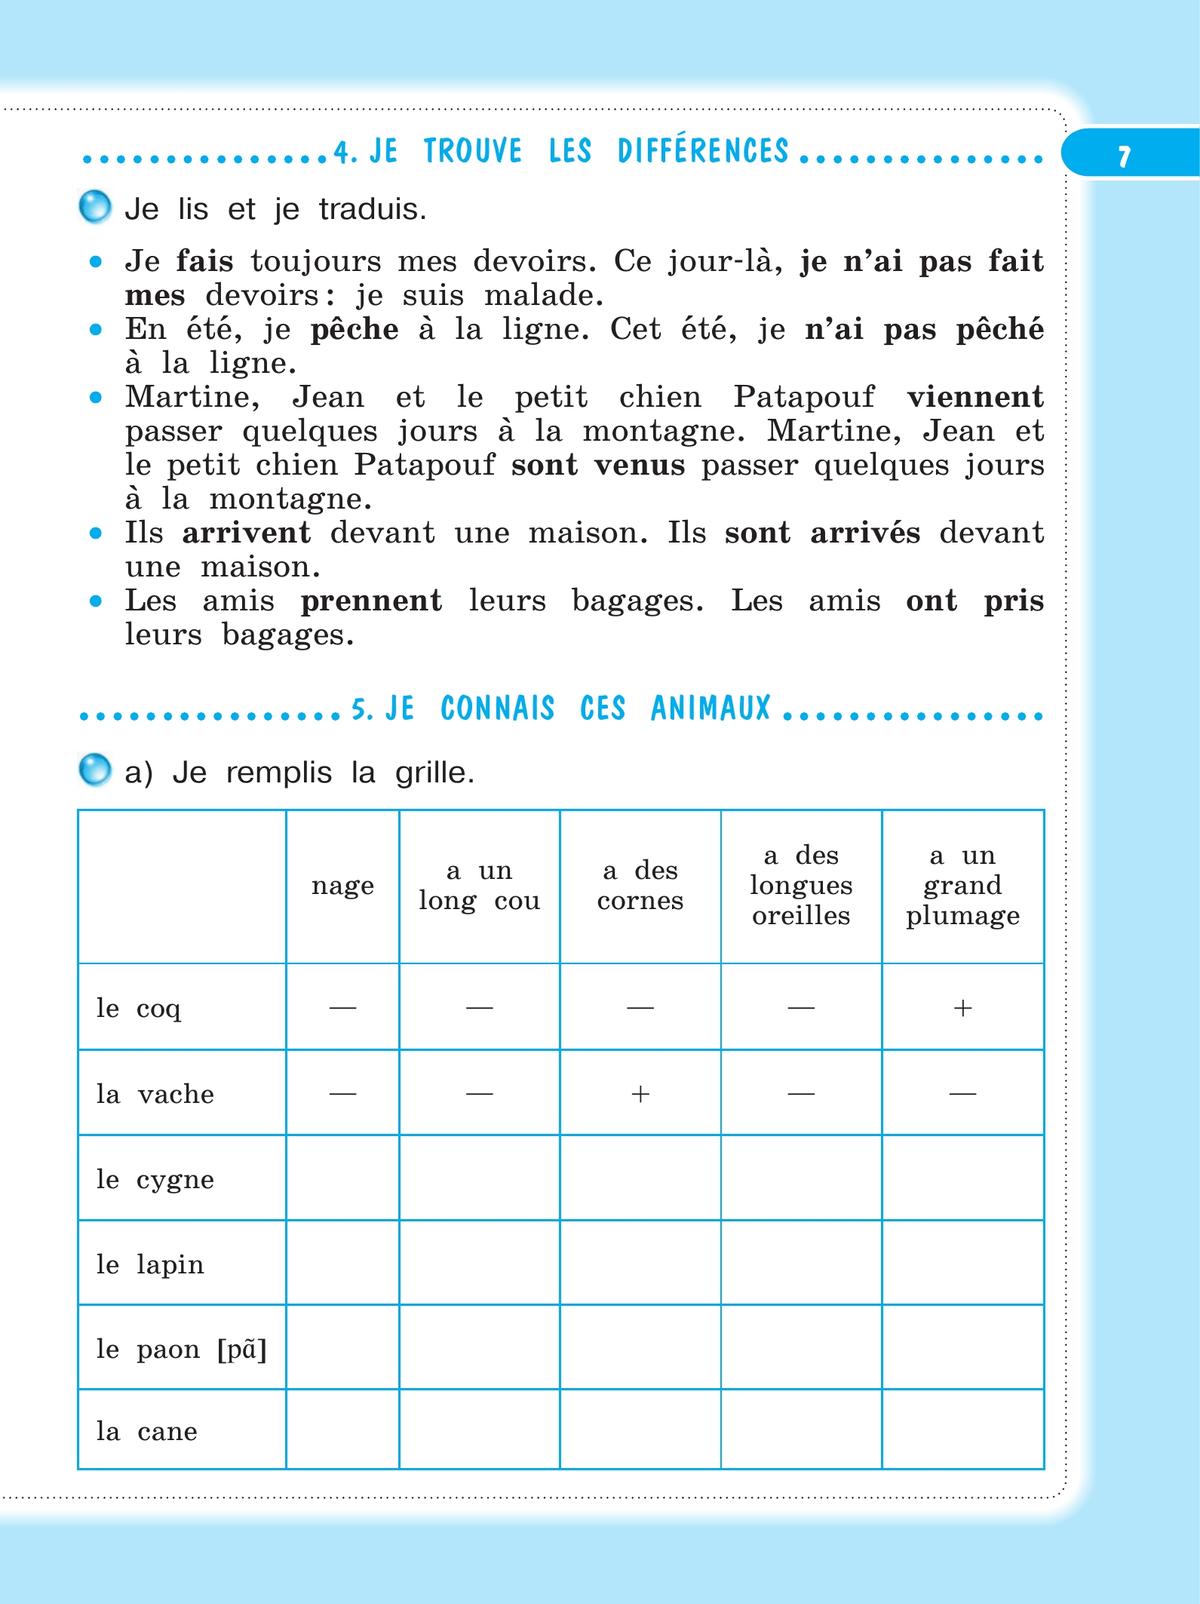 Французский язык. Рабочая тетрадь. 4 класс. 3